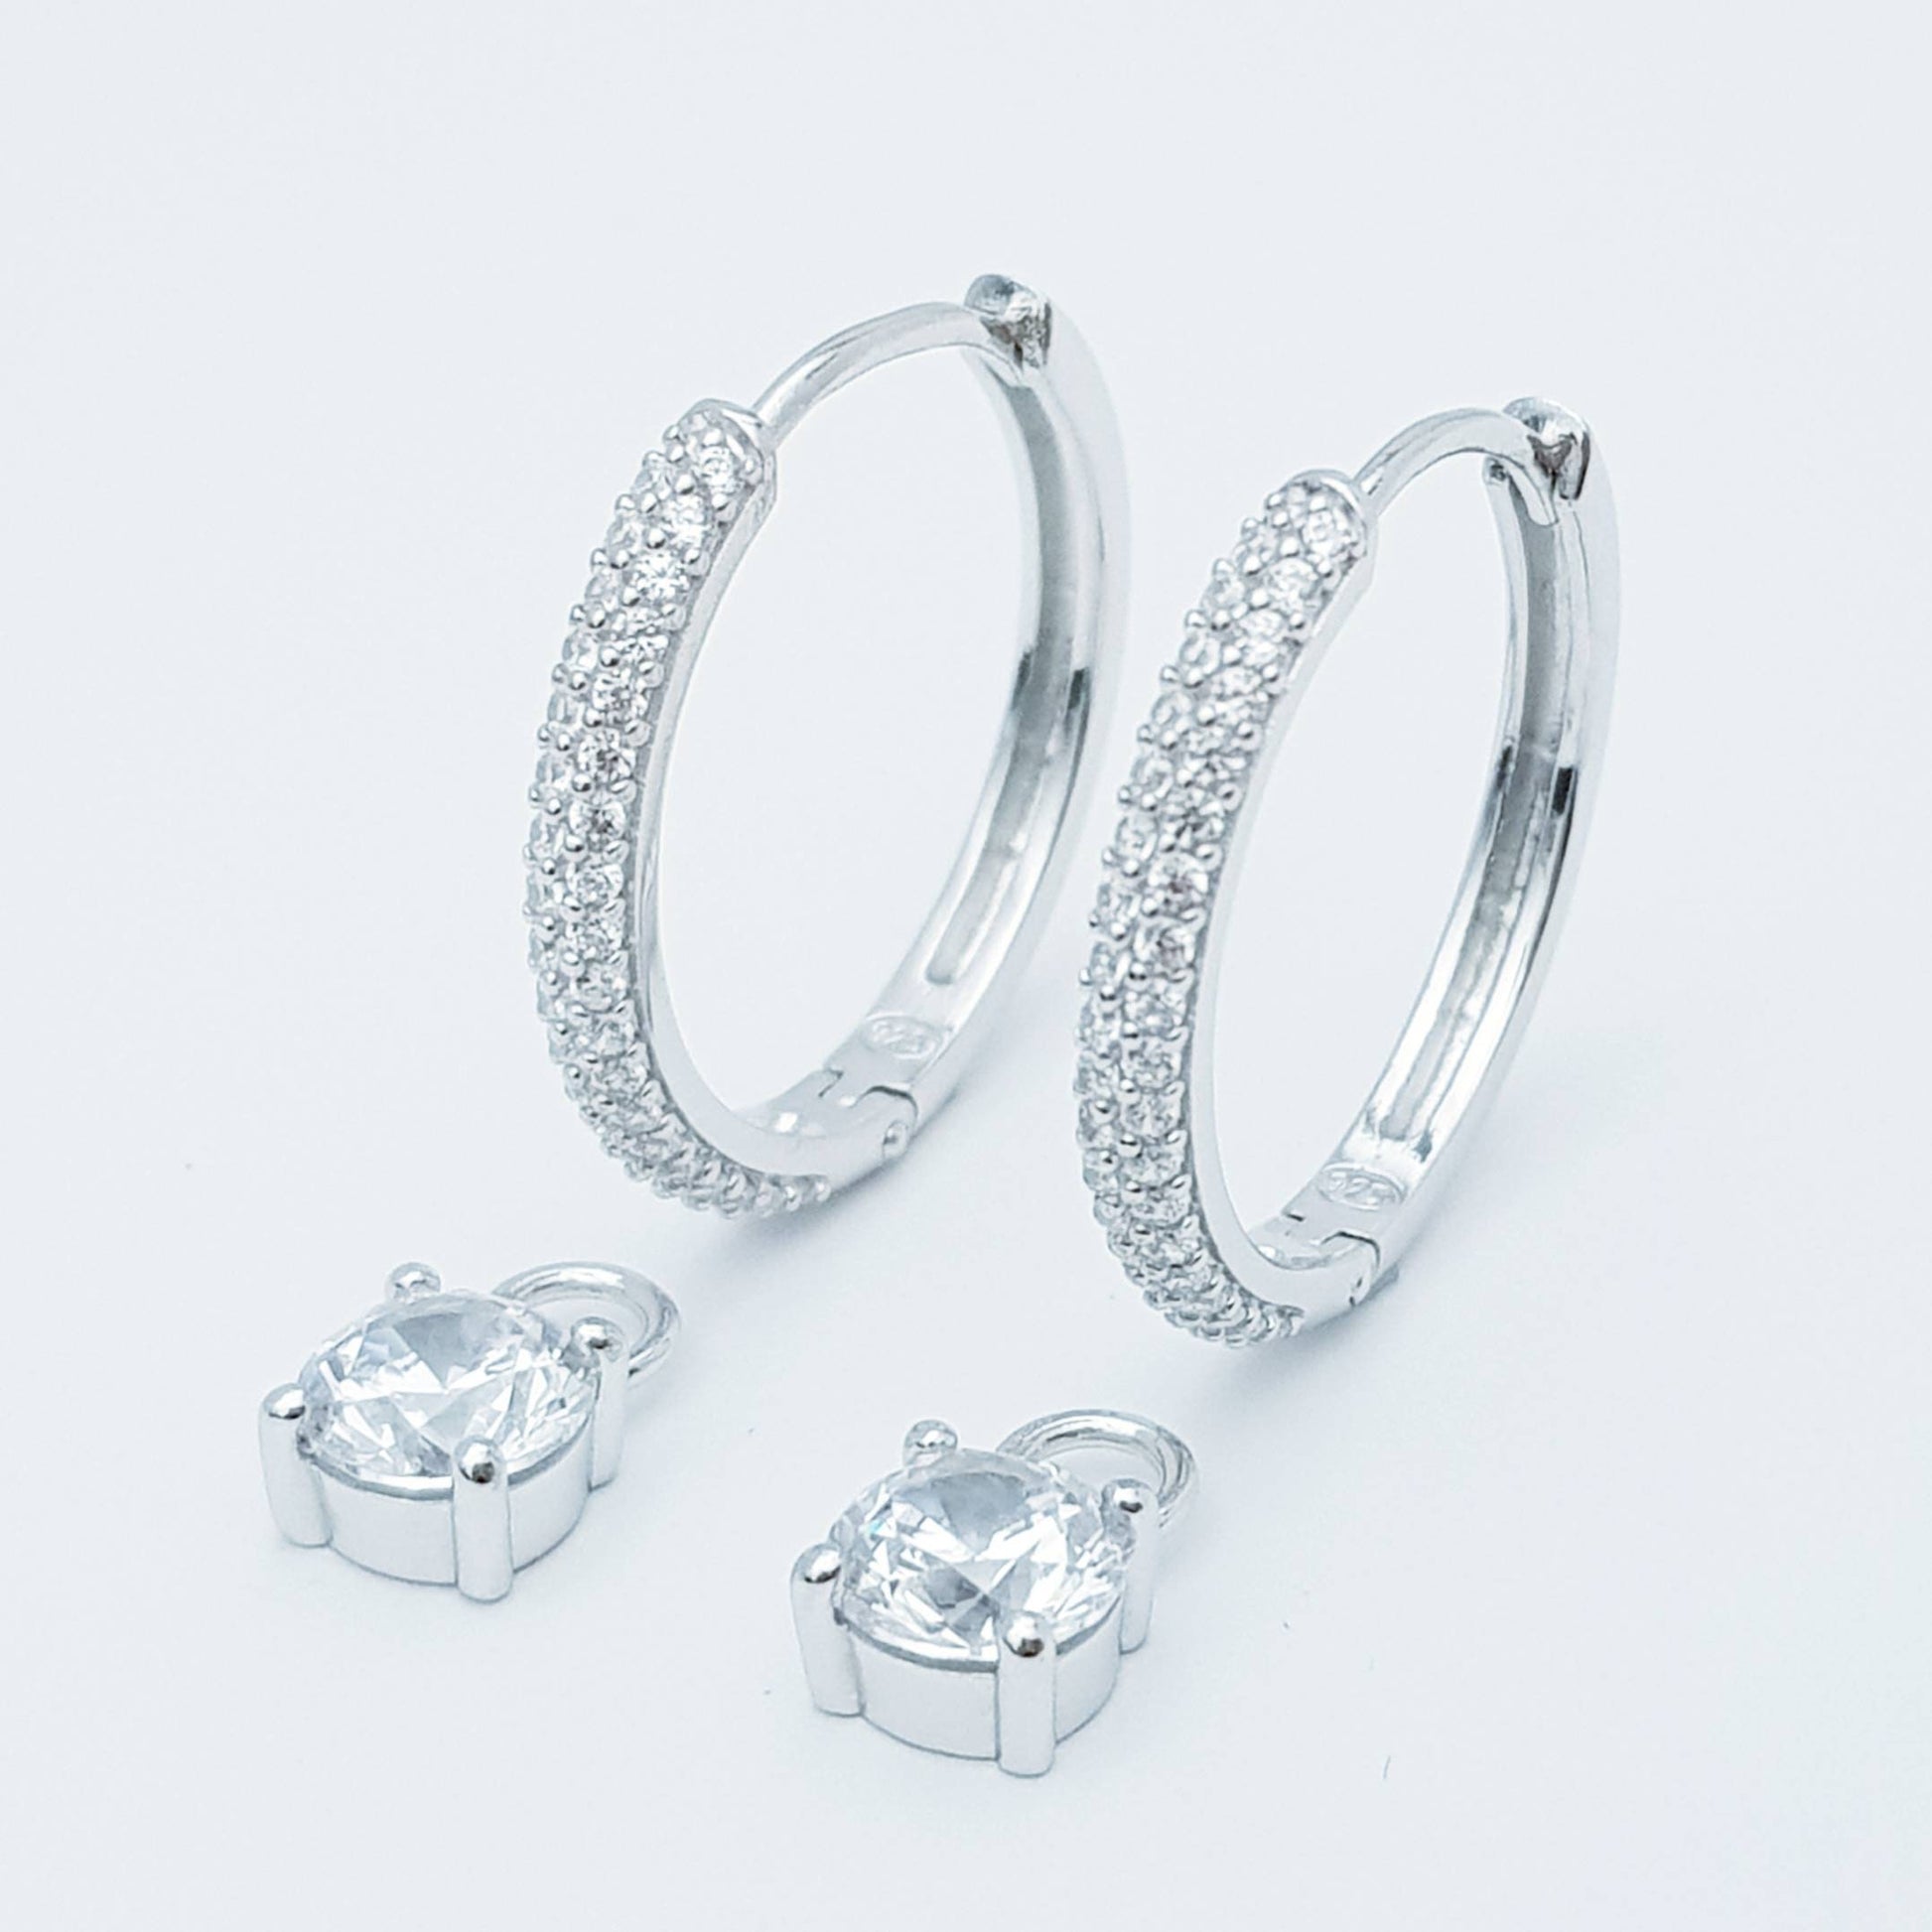 Two earrings in one, silver huggie earrings, faux diamond huggies, diamond drop lever back earrings